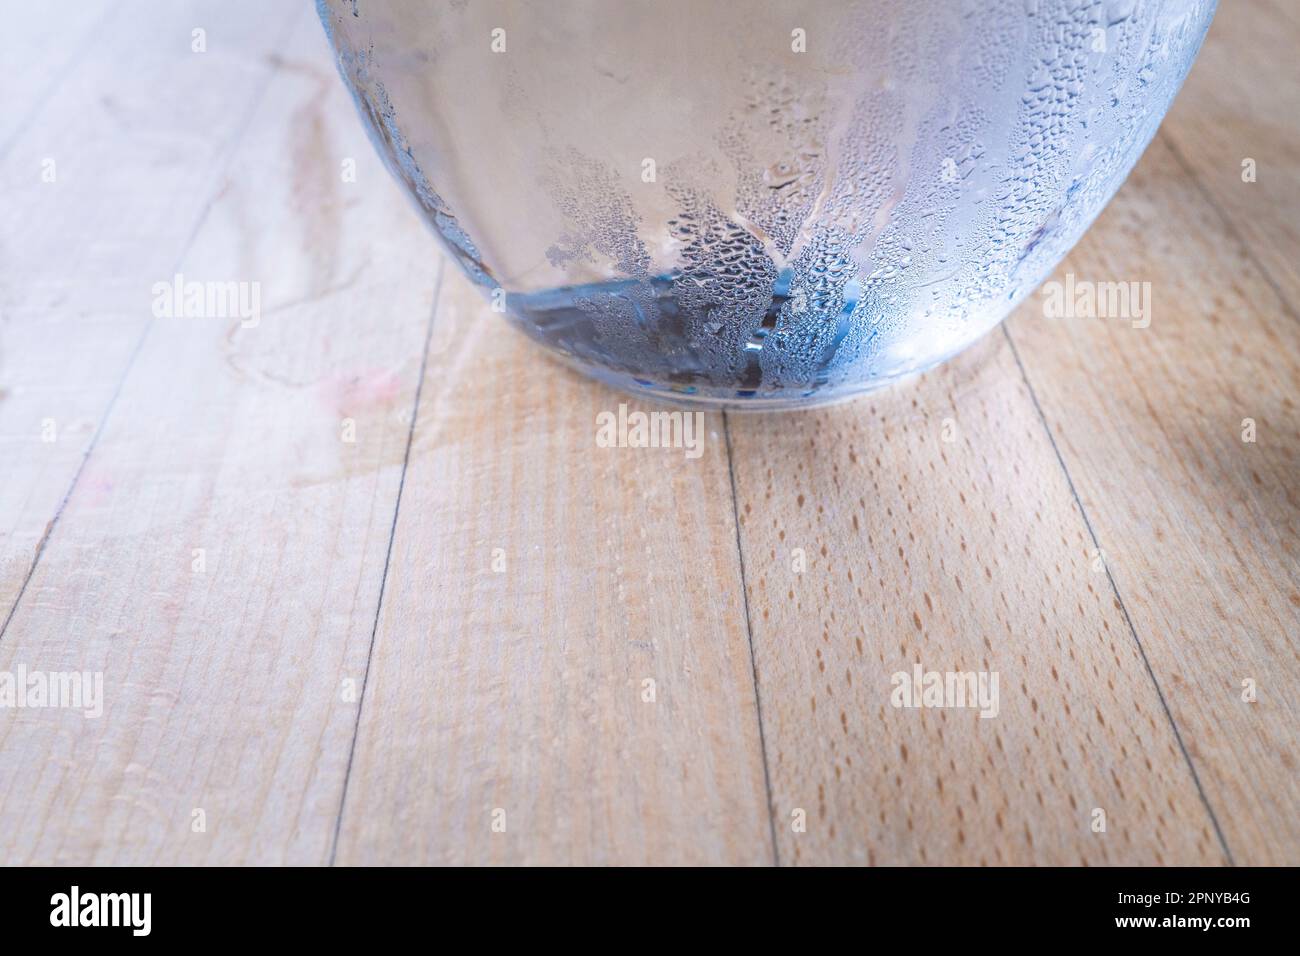 Eine Nahaufnahme des Kondensats an der Seite einer Glaskanne mit Wasser auf einem Tisch. Stockfoto